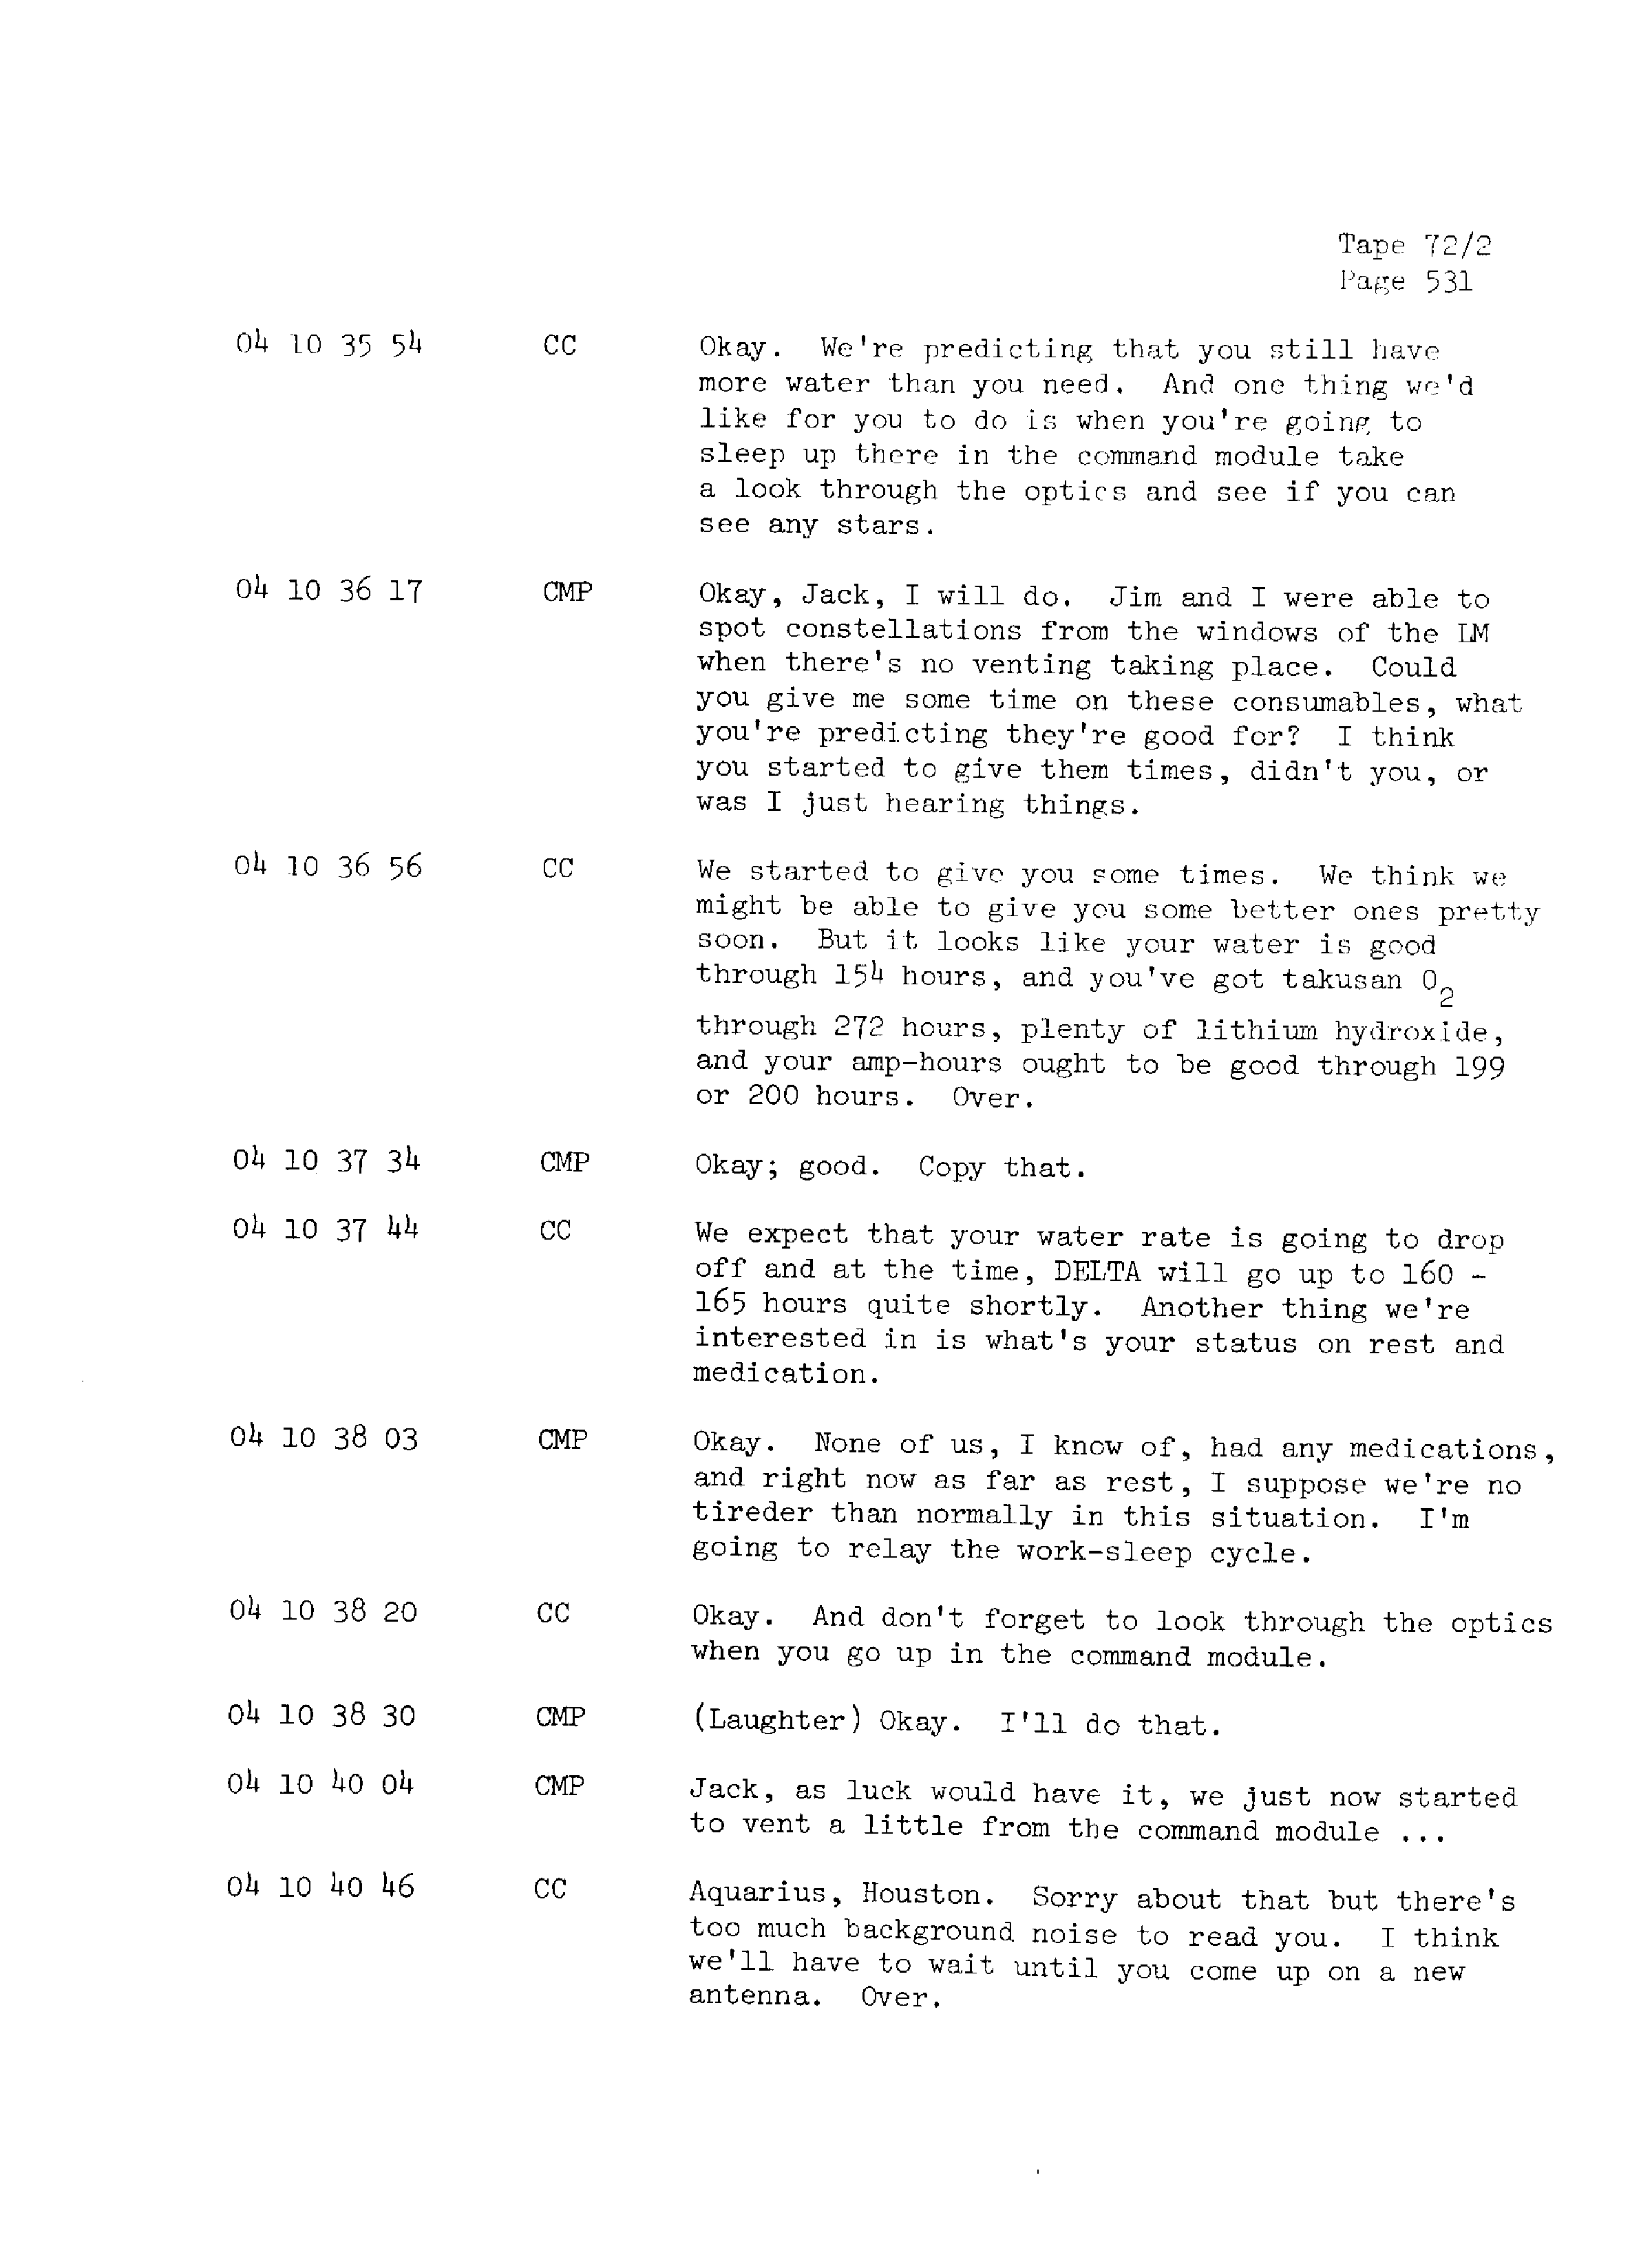 Page 538 of Apollo 13’s original transcript